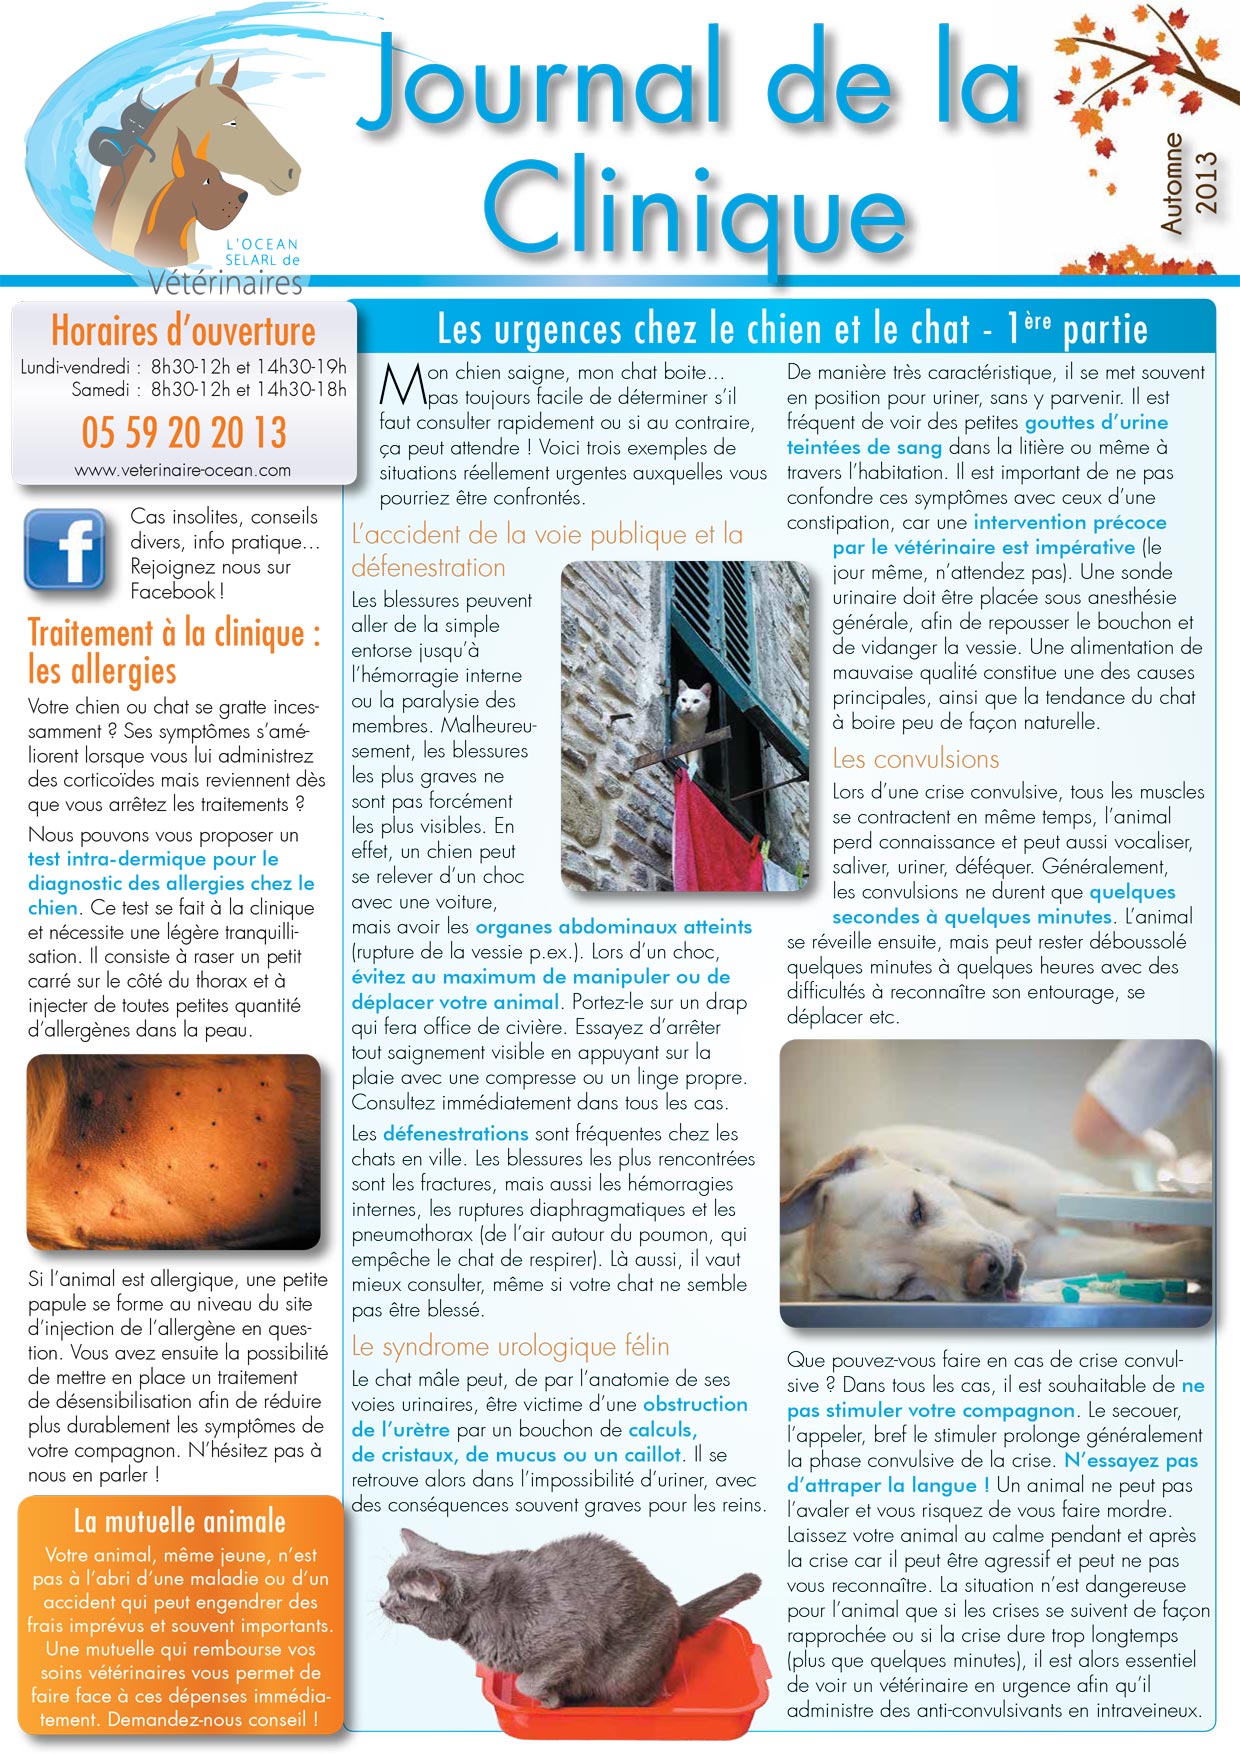 Le Journal de la Clinique - Automne 2013 page 1